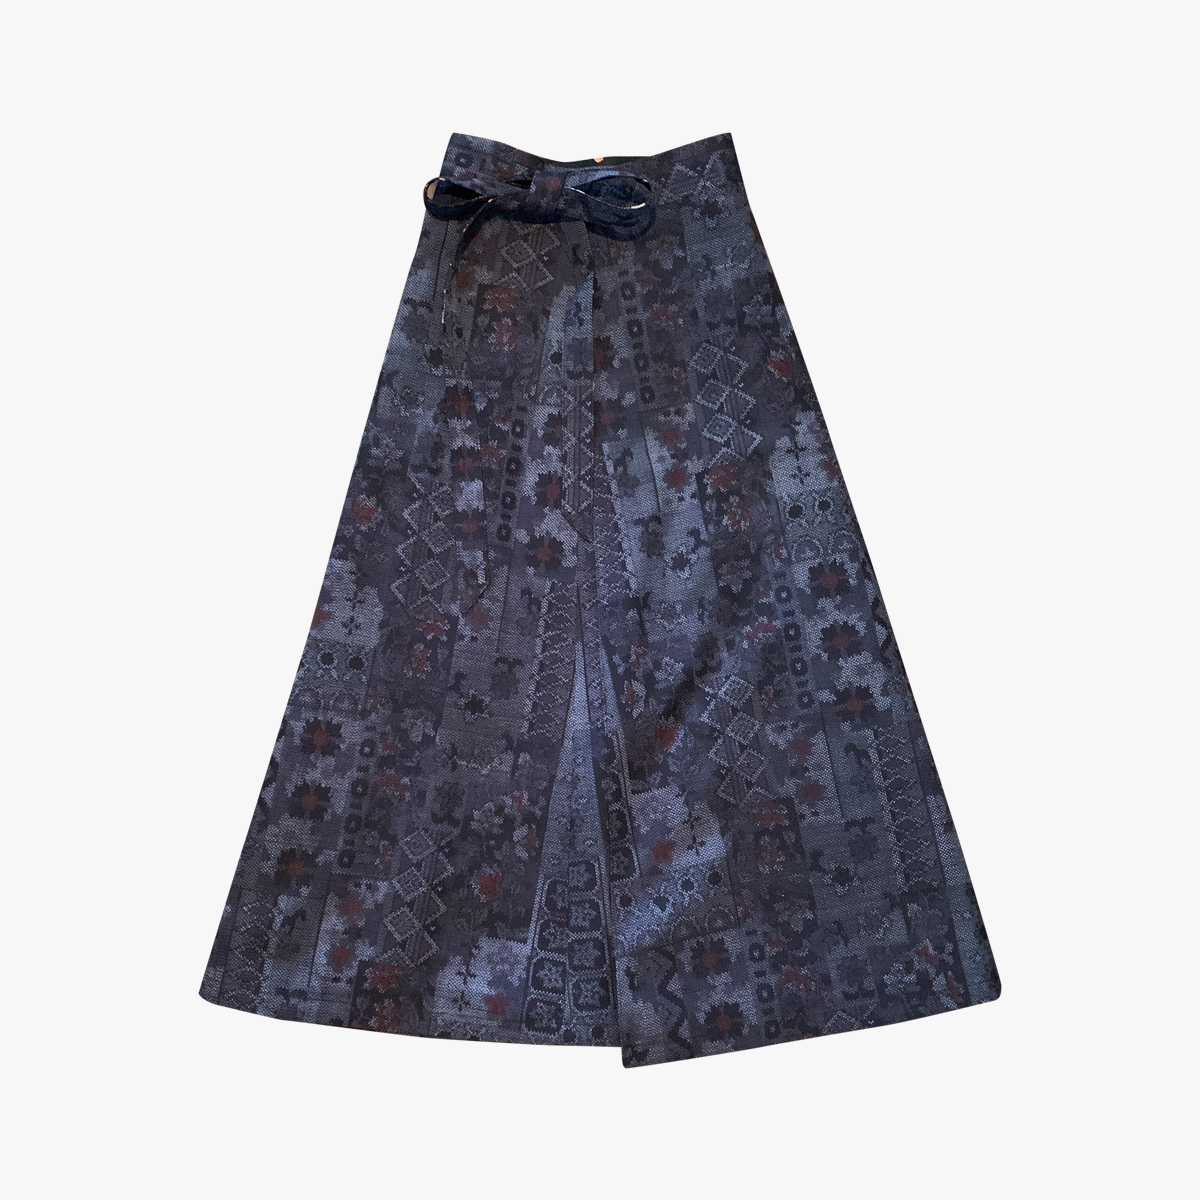 Reversible Skirt Flare - FIorini